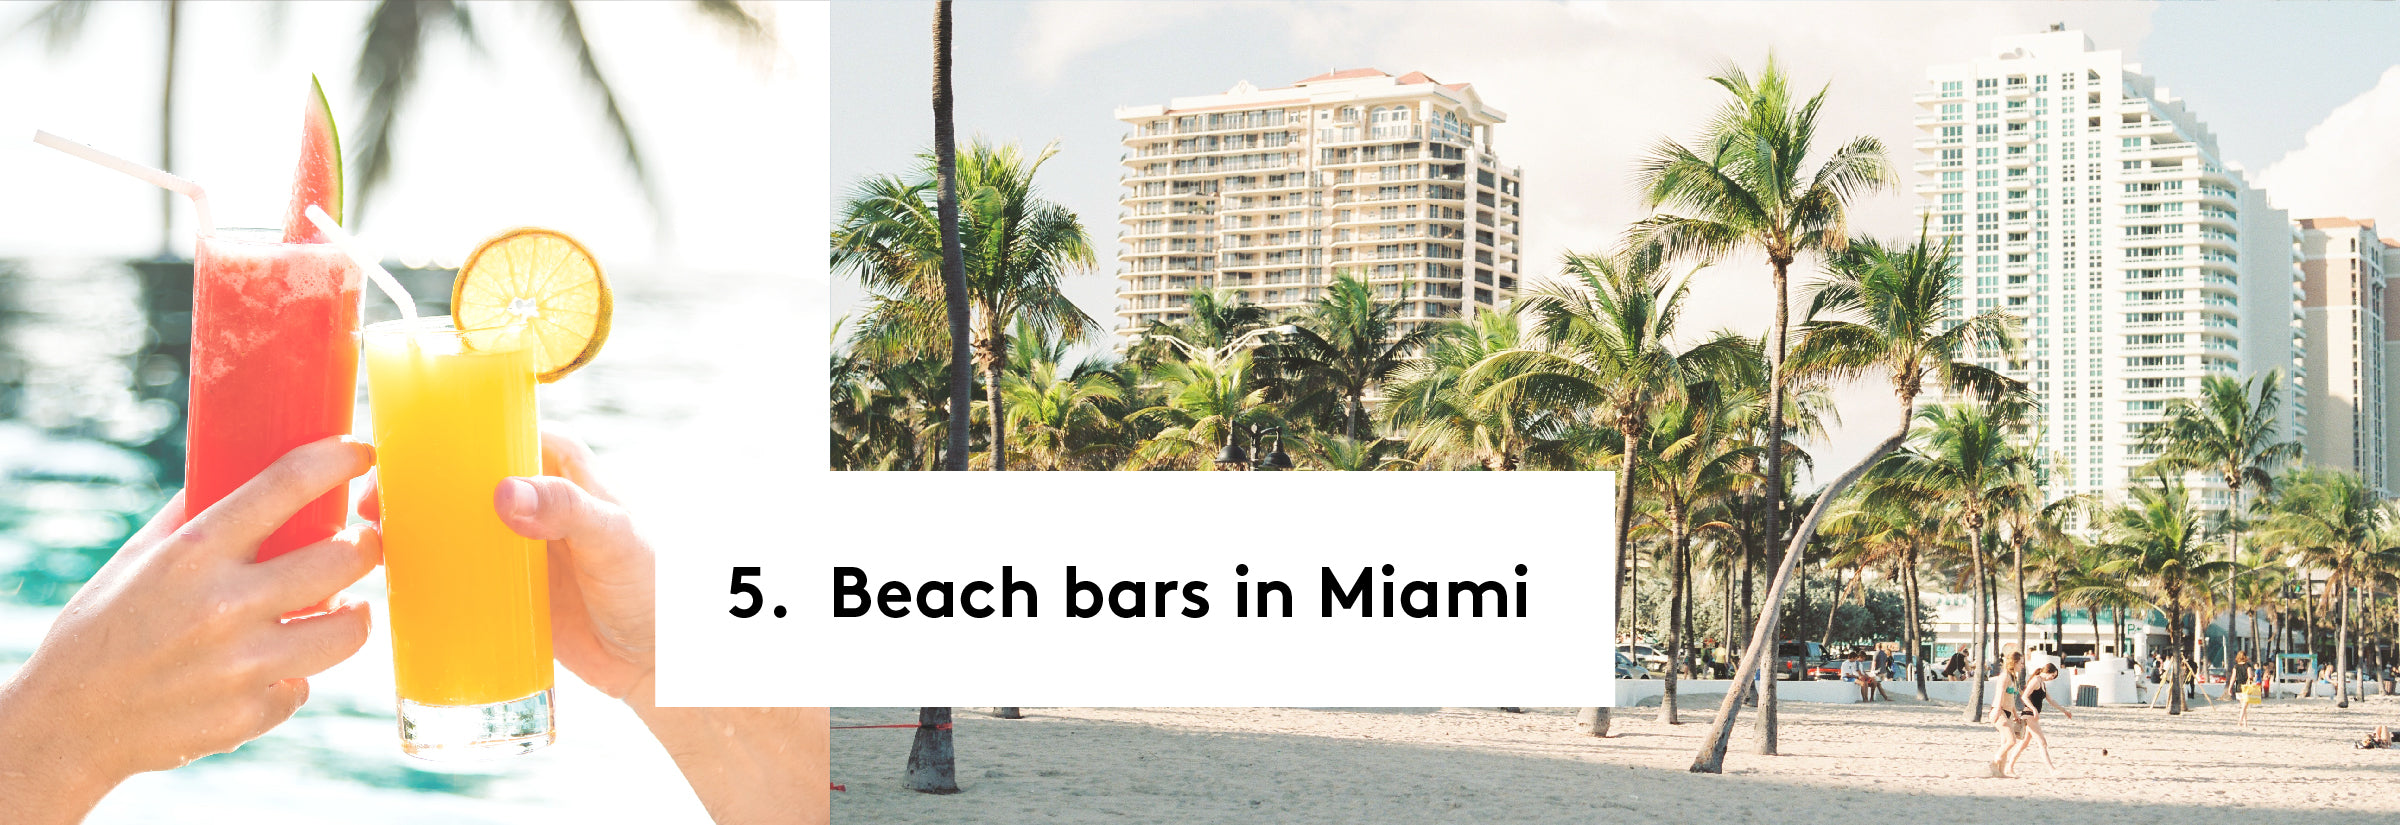 5. Beach bars in Miami